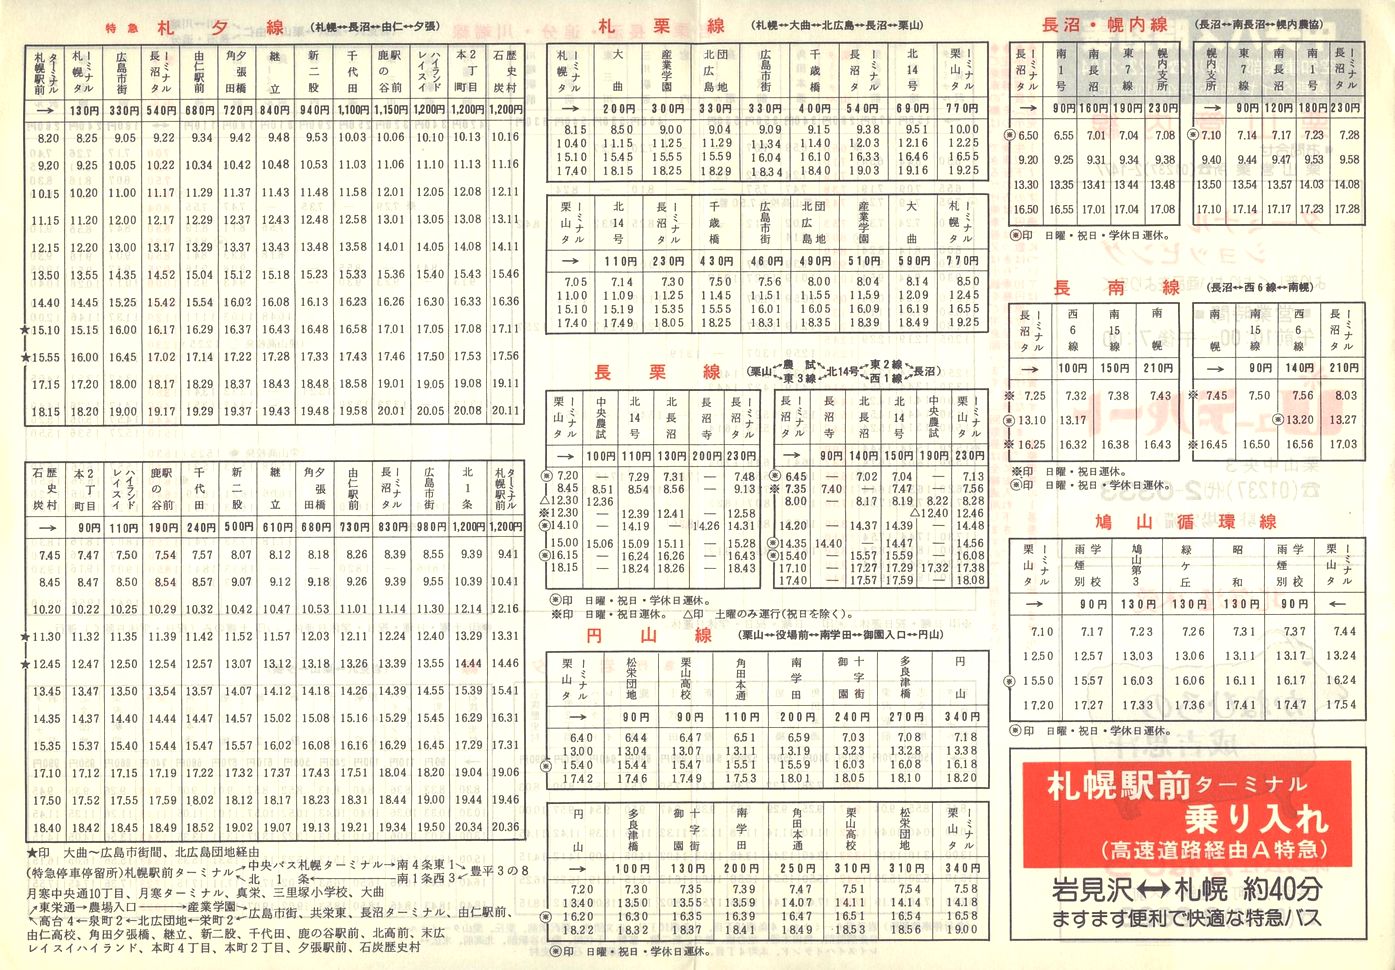 1984-04-10改正_北海道中央バス(空知)_栗山管内線時刻表裏面